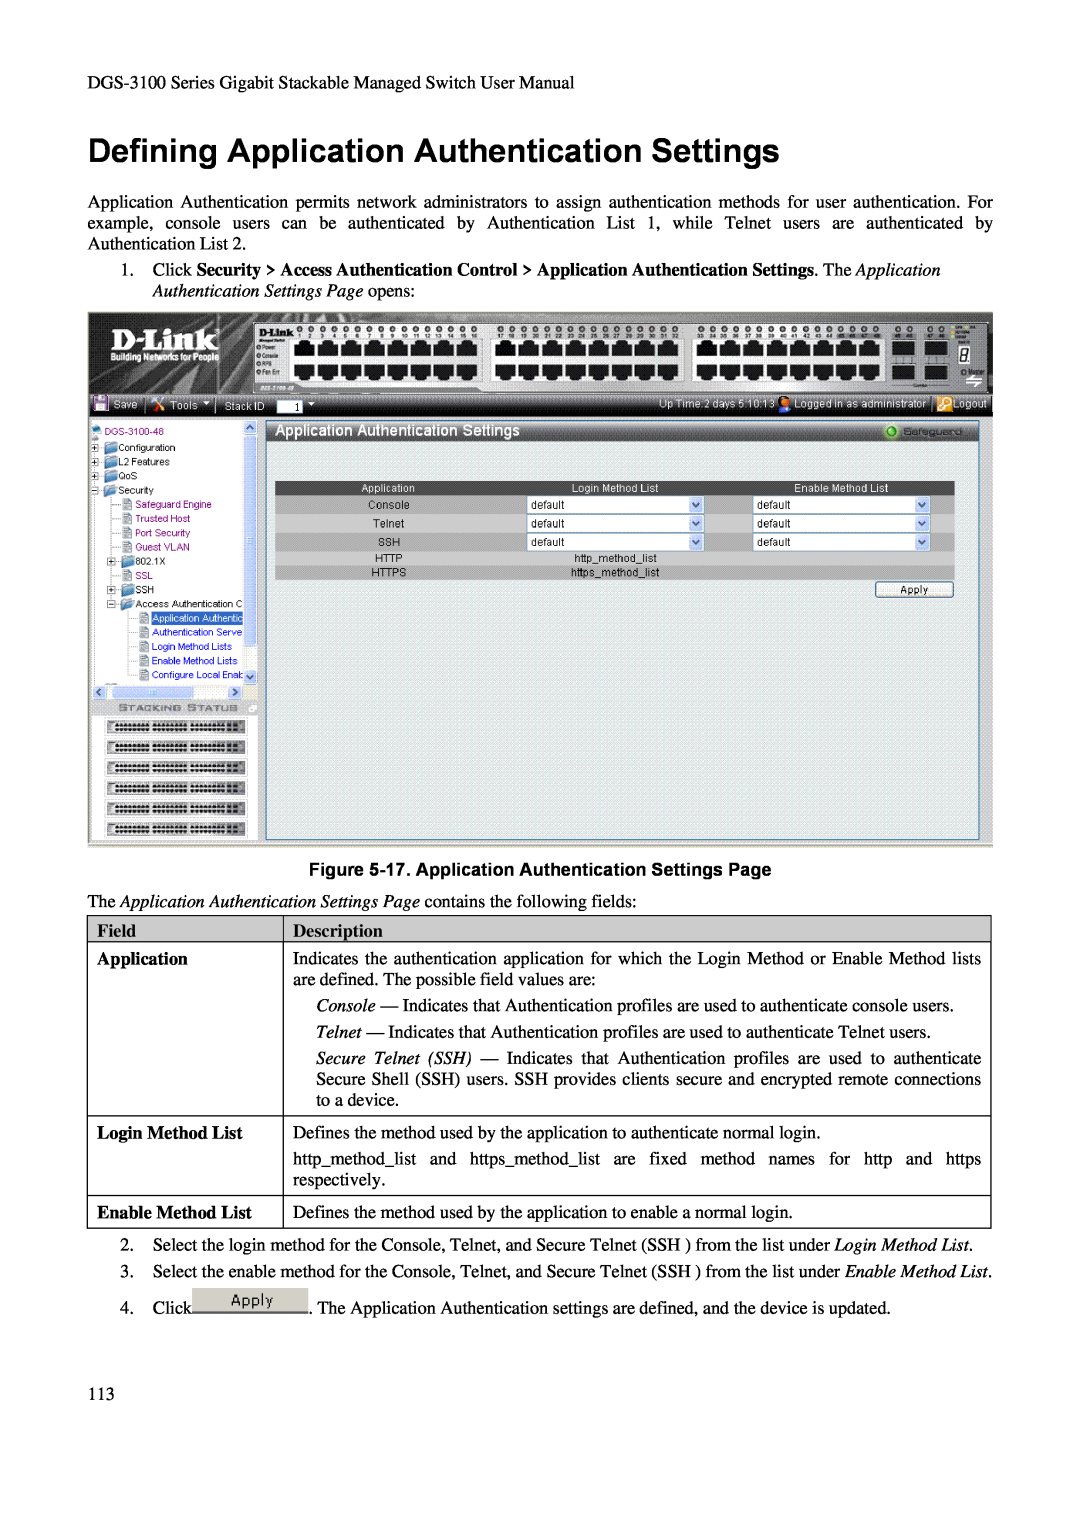 D-Link DGS-3100 Defining Application Authentication Settings, 17. Application Authentication Settings Page, Description 